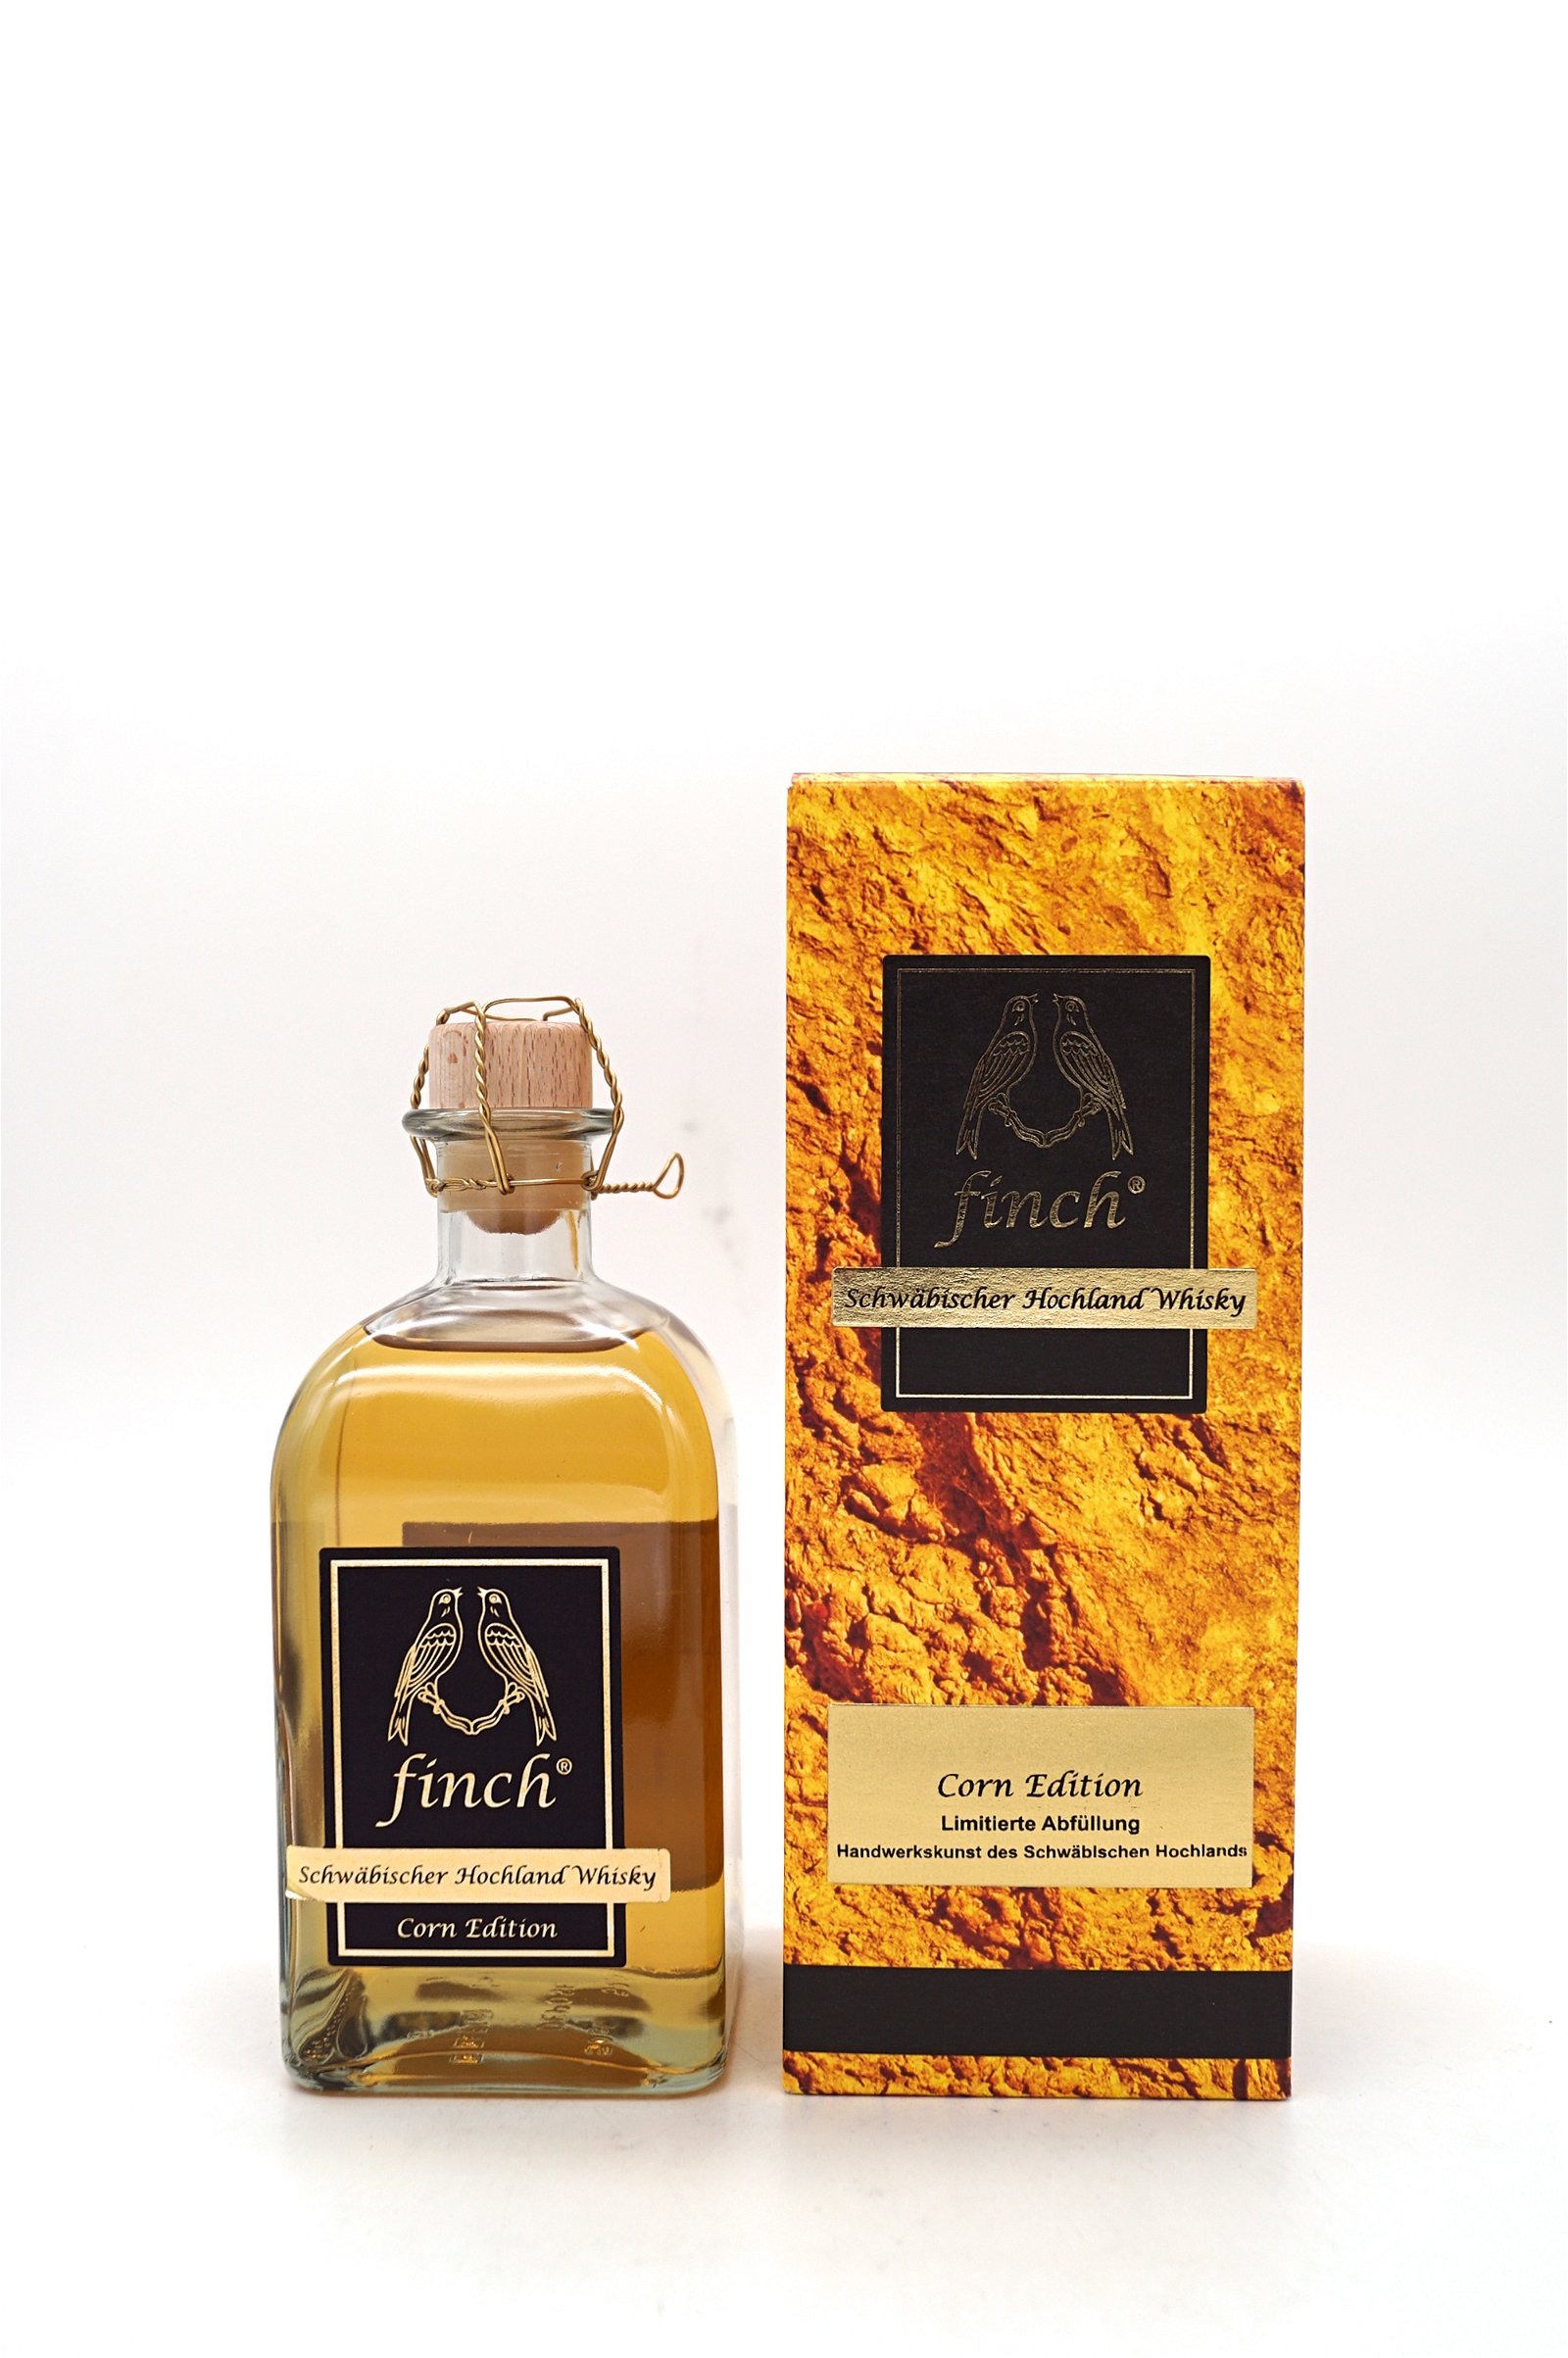 Finch Corn Edition Limitierte Abfüllung Schwäbischer Hochland Whisky